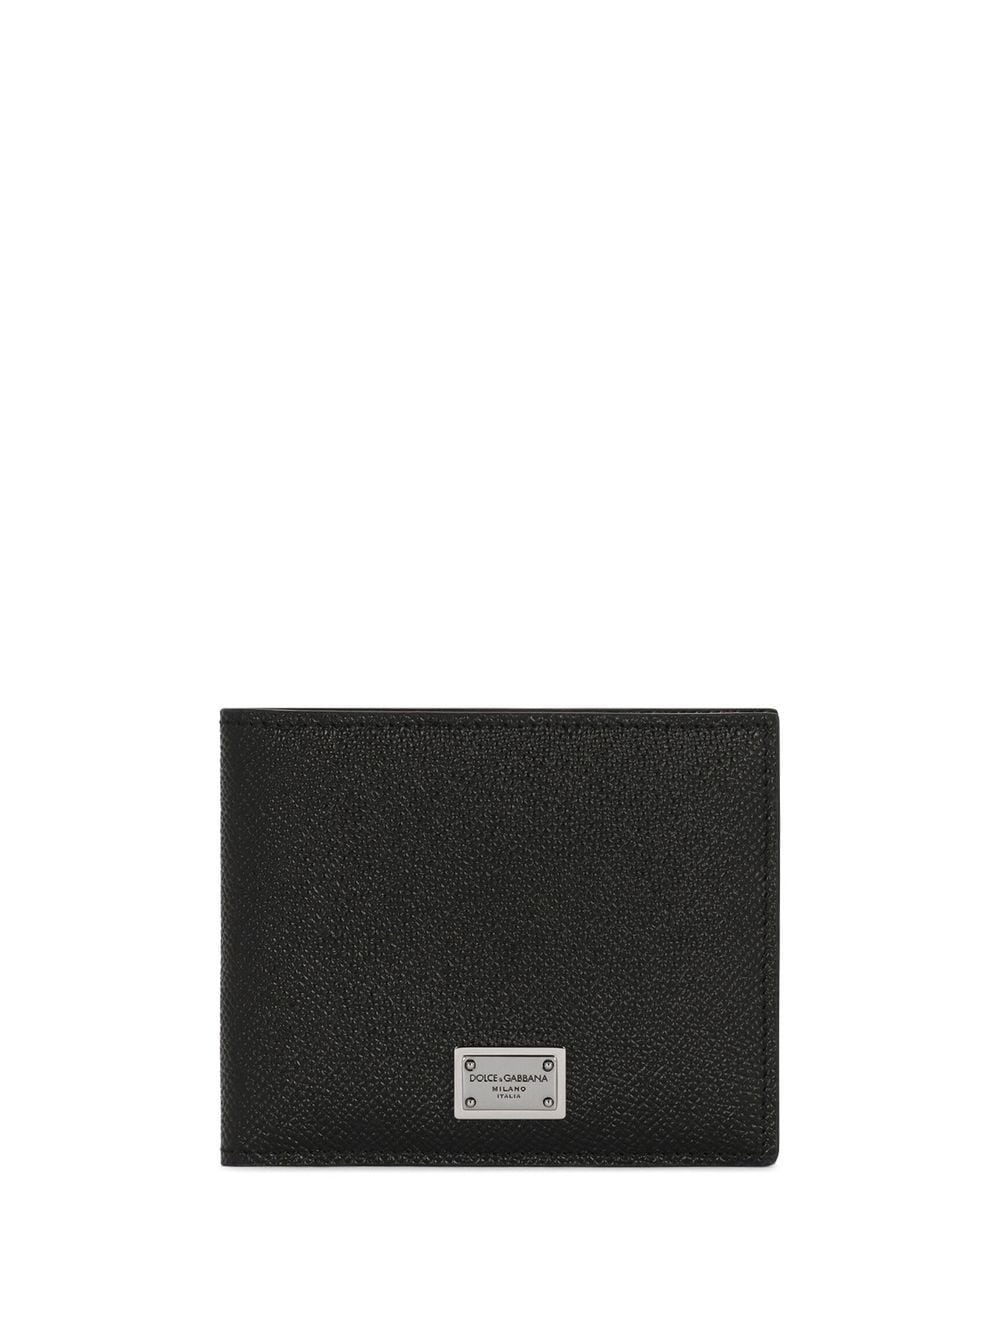 Dolce & Gabbana logo-tag leather bifold wallet - Black von Dolce & Gabbana